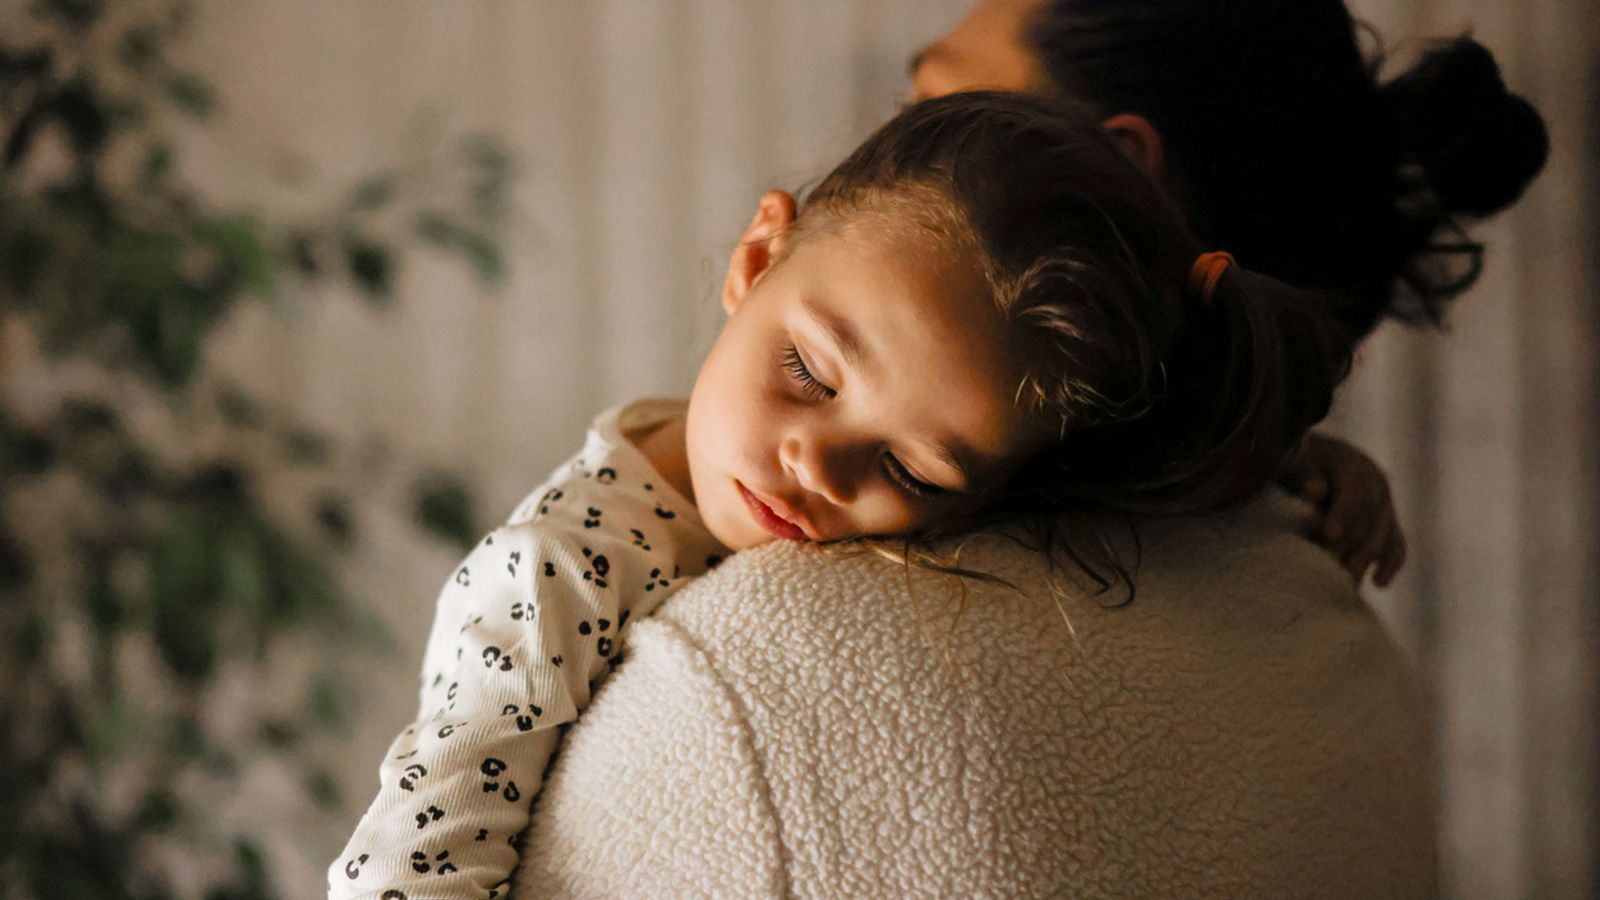 يتوقف الأطفال الصغار عن النوم “بمجرد نمو أدمغتهم ، وليس في سن معينة” |  أخبار المملكة المتحدة